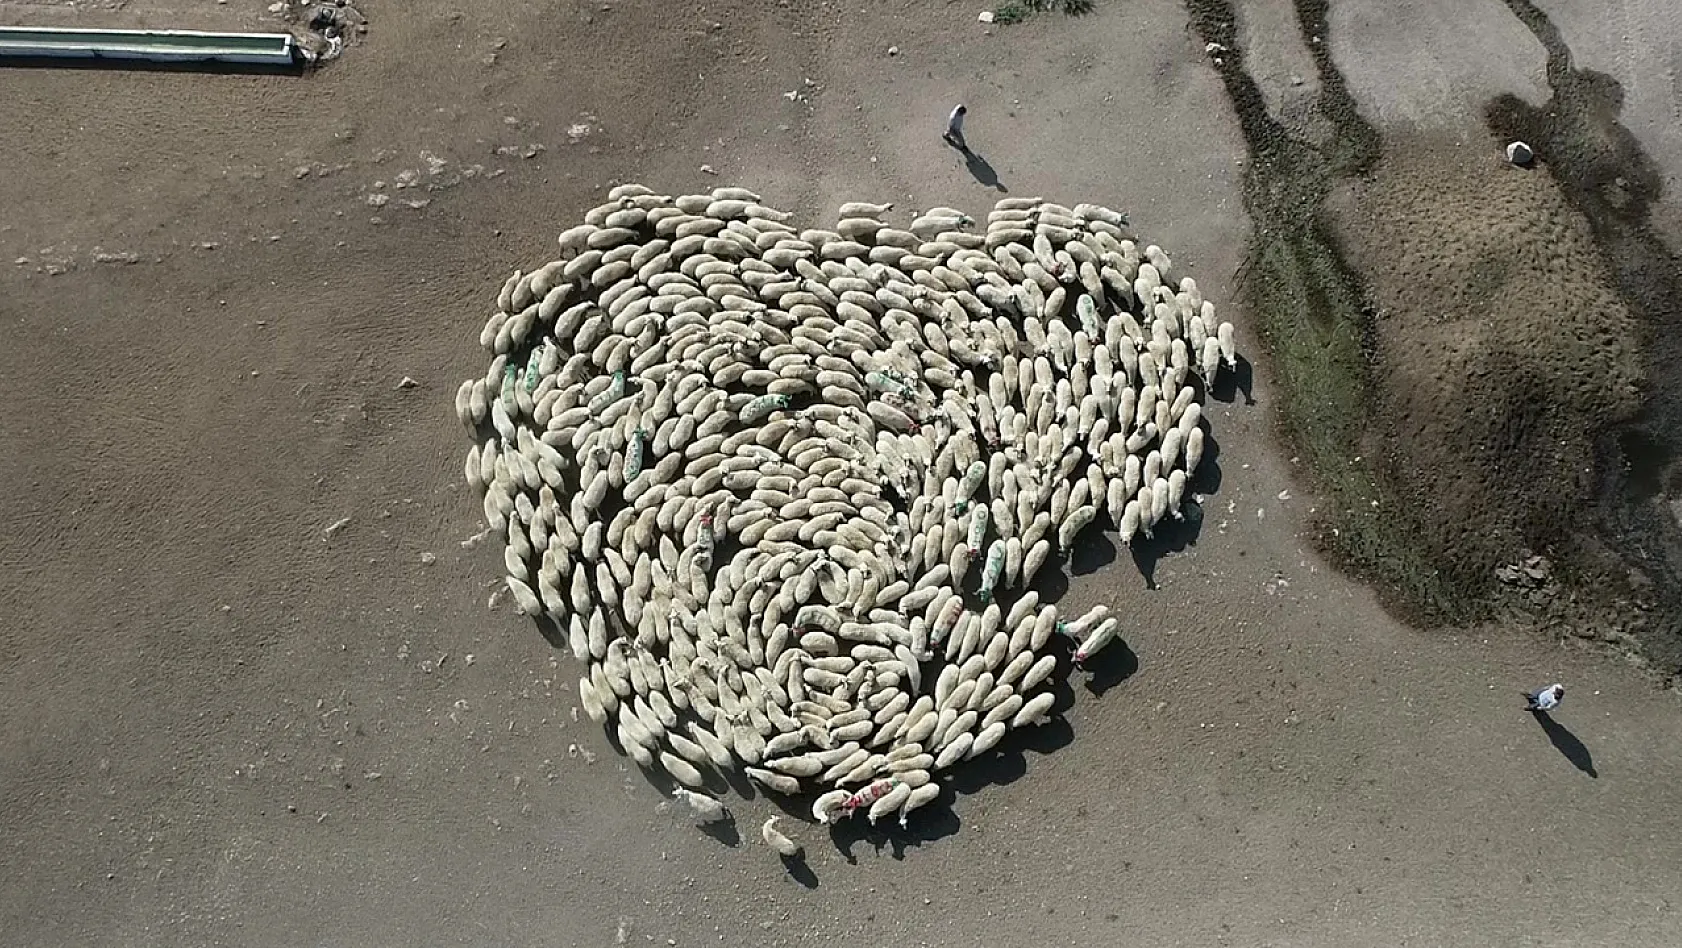 Koyun Sürüsü Durmadan Döndü Çin'deki Görüntüler Akıllara Geldi